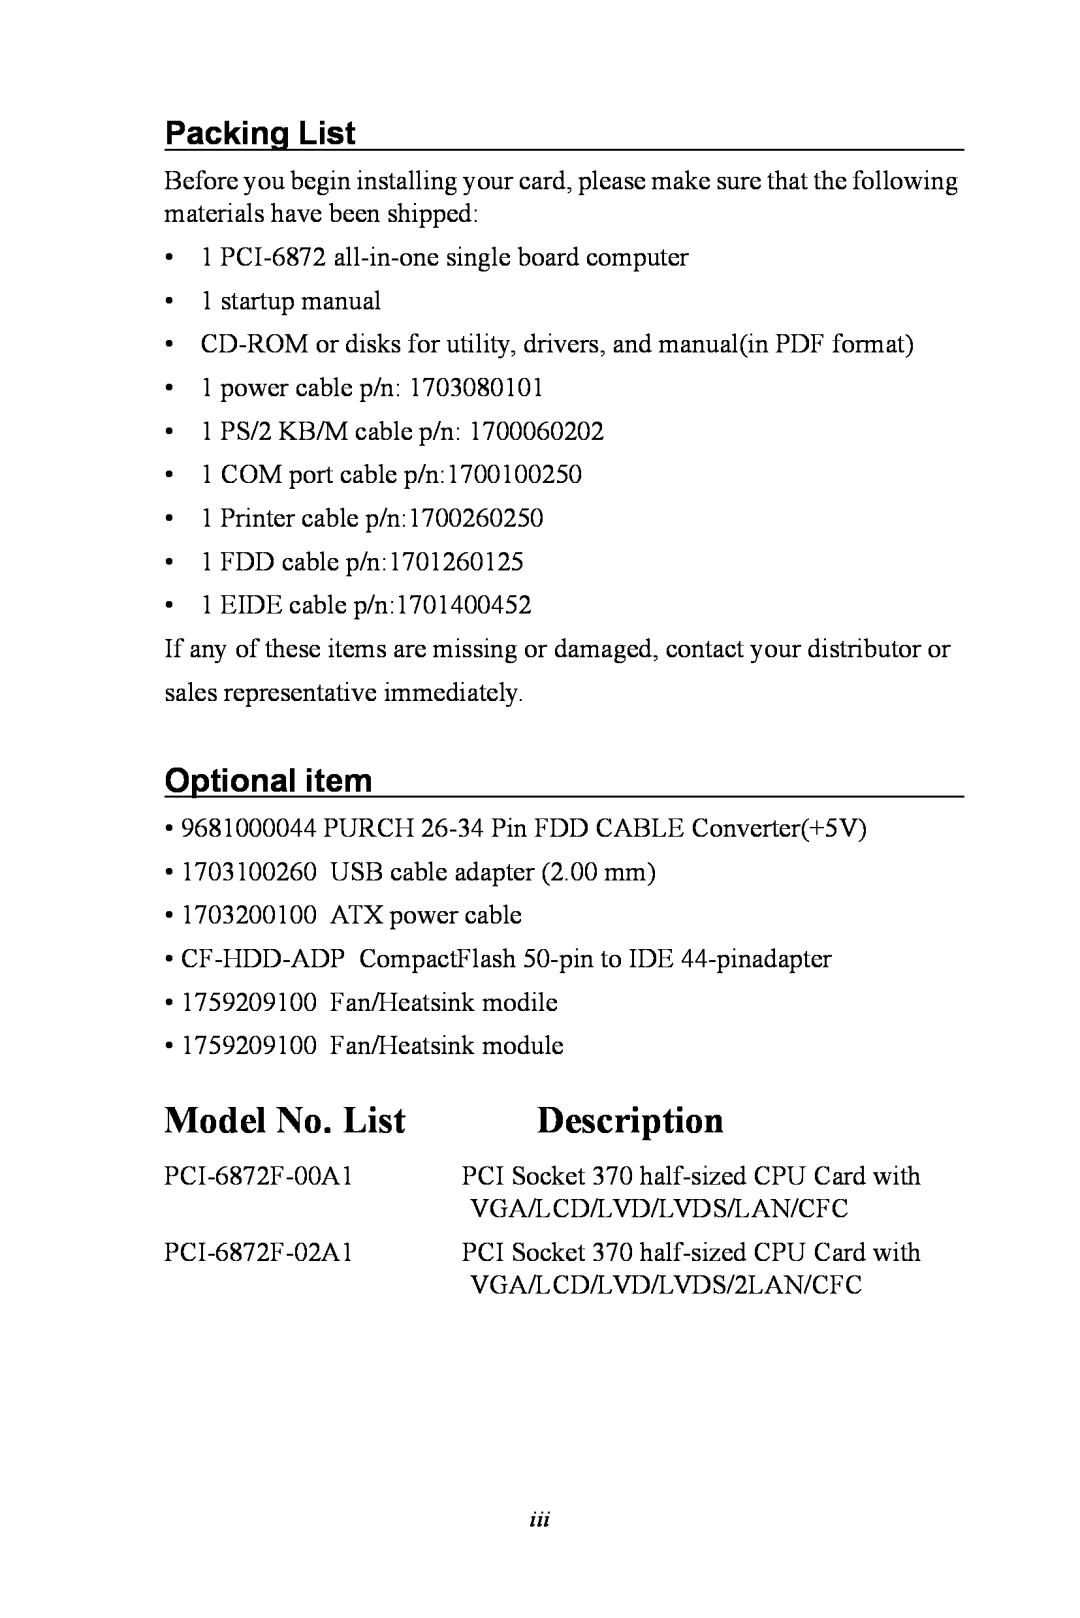 Advantech PCI-6872 user manual Packing List, Optional item, Model No. List, Description 